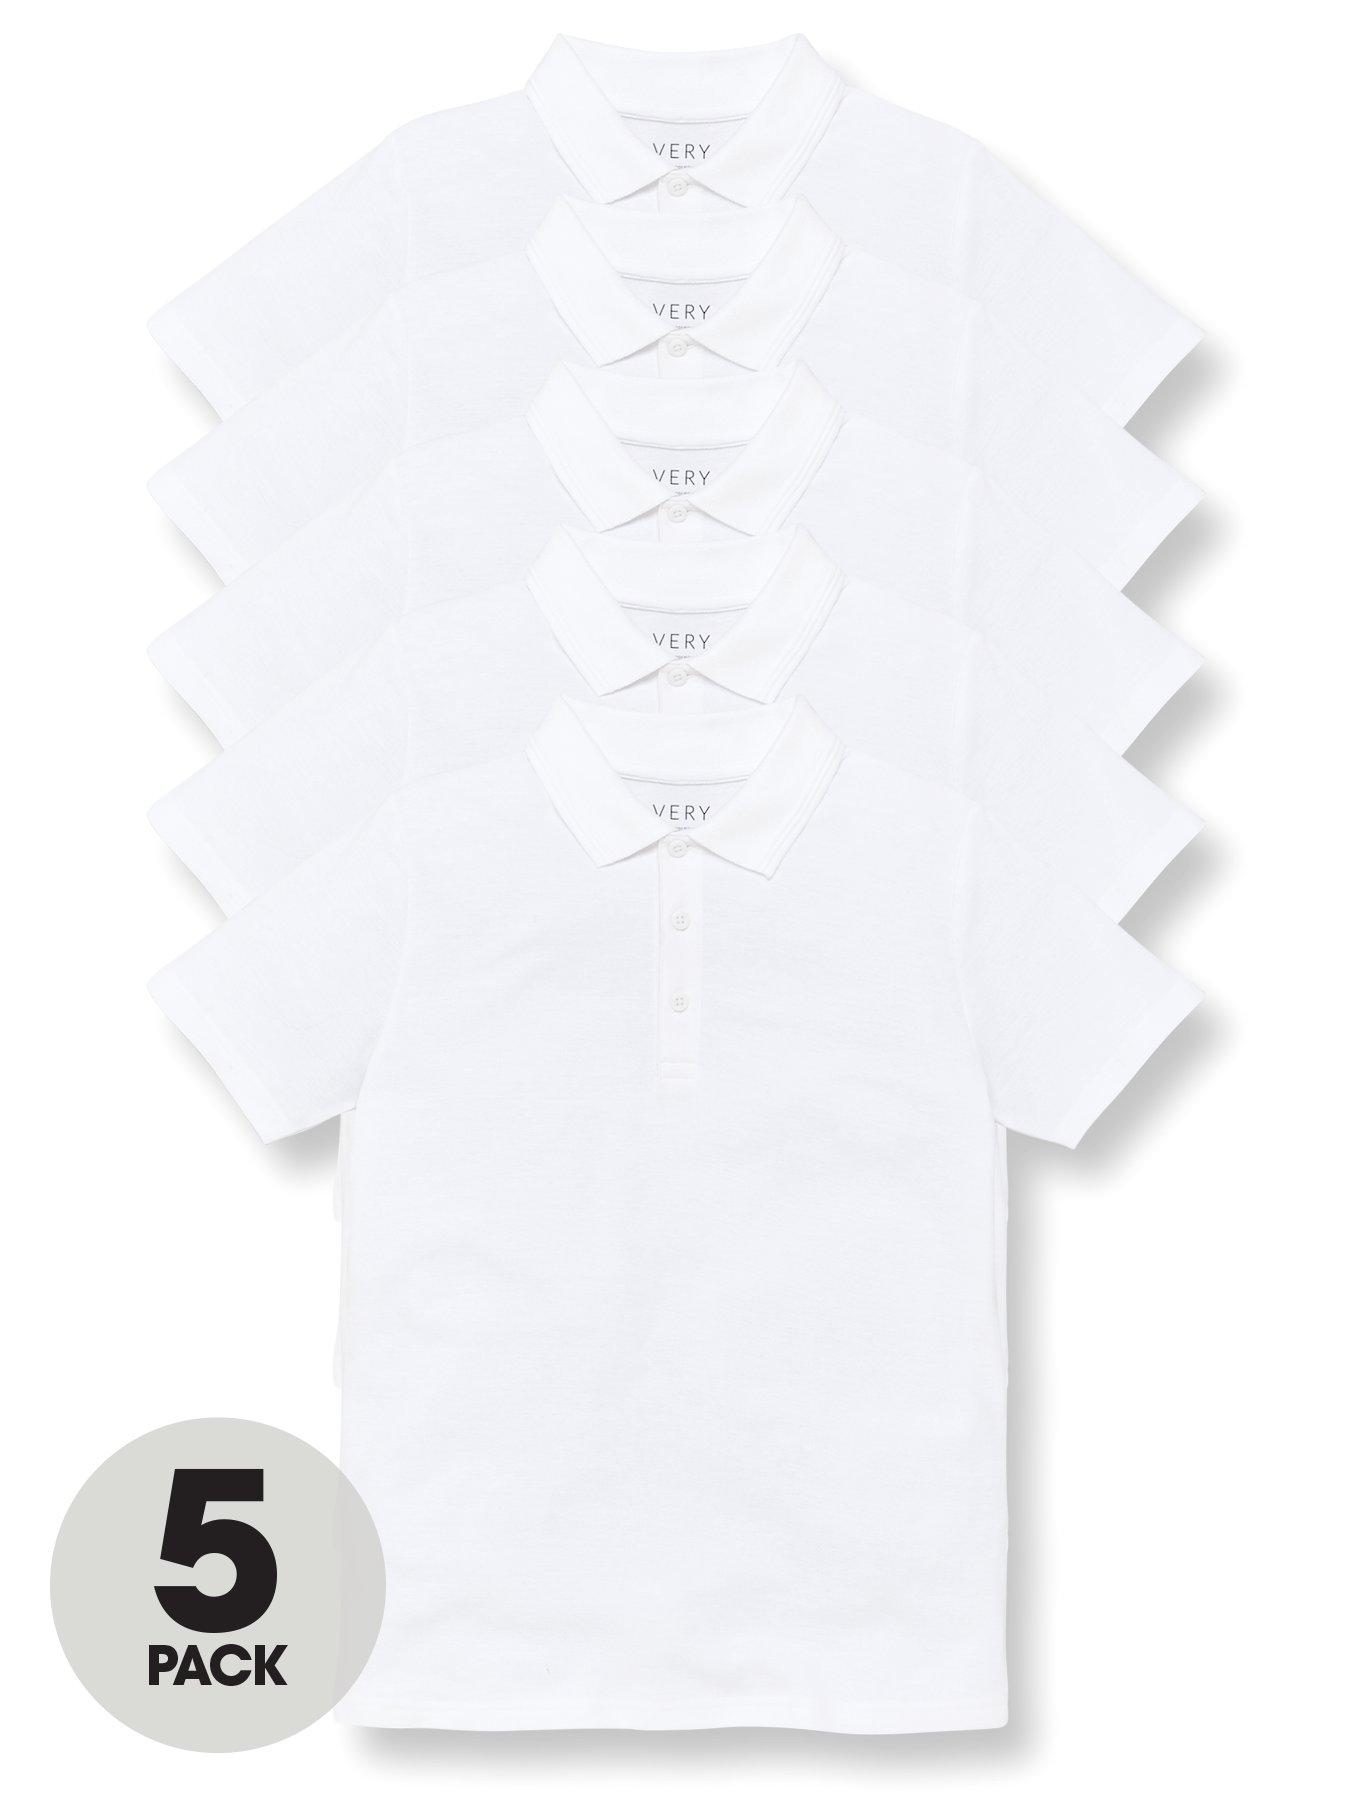 Boys Girls 2 Pack White Regular Fit Short Sleeve School Shirt Ages 3-16 